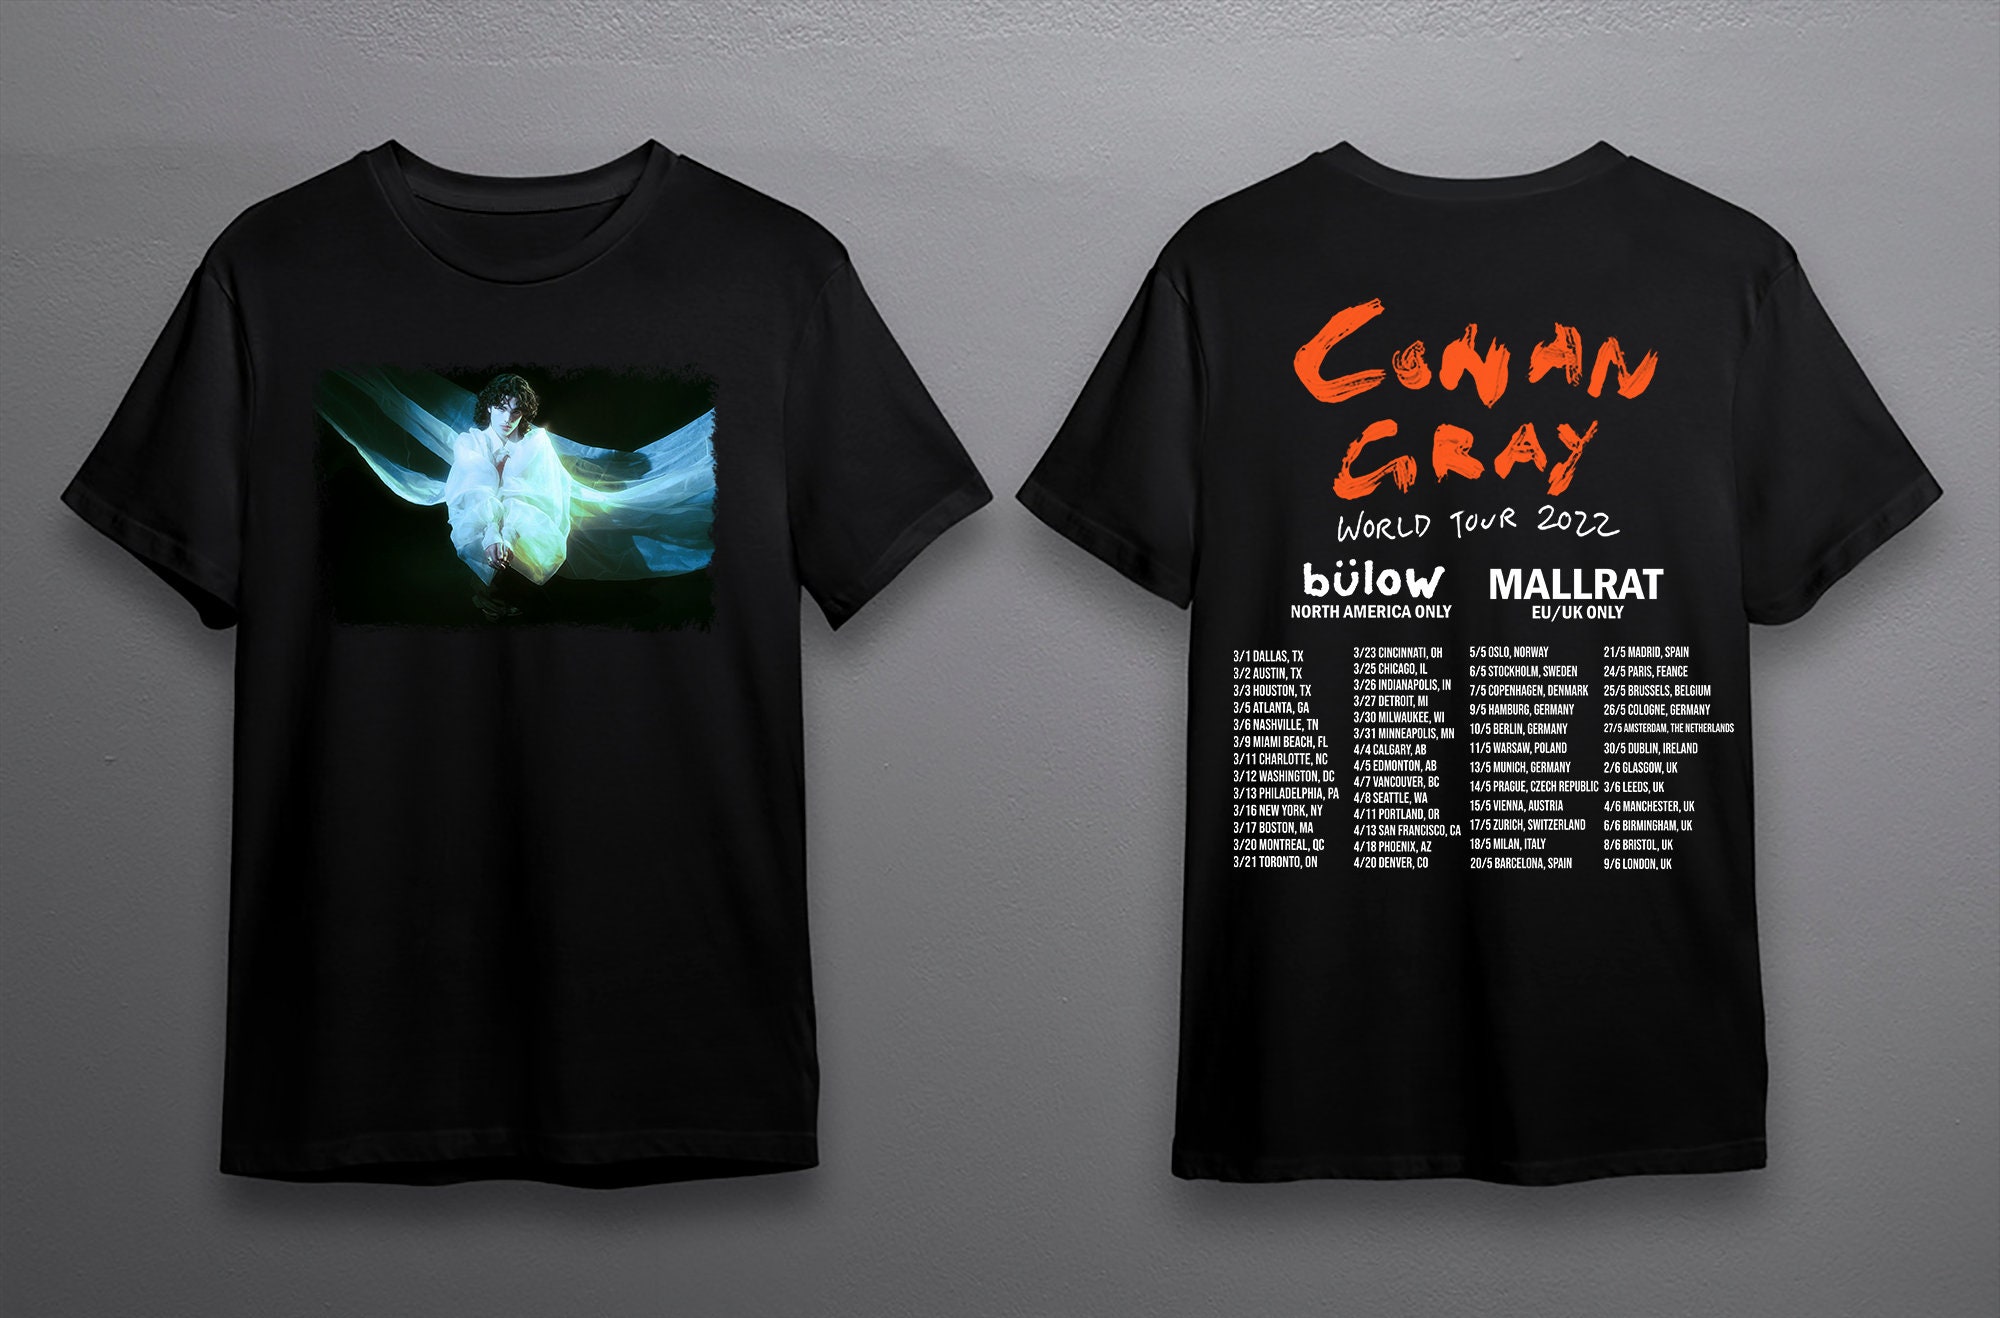 Discover Conan Gray World Tour 2022 Shirt, Conan Gray shirt, Conan gray North America Tour 2022 Shirt